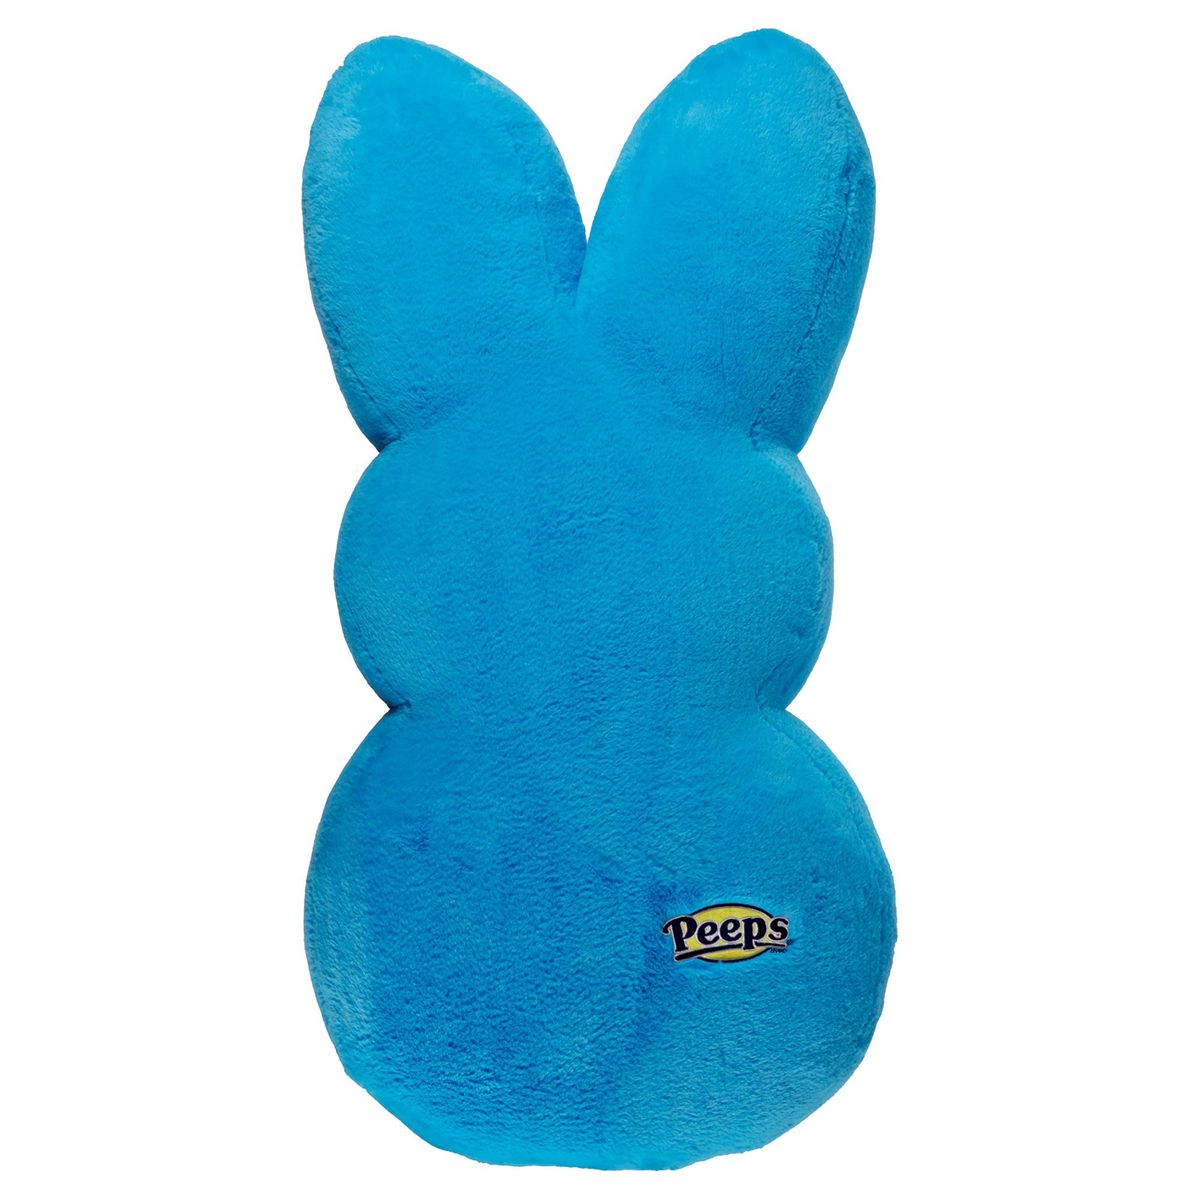 【されており】 [送料無料] Way To Celebrate Easter Peeps Bunny Plush, Blue Mustache [海外通販] | Way To Celebrate Easter Peeps Bunny Plush, Blue Mustache：Walmart 店 することは